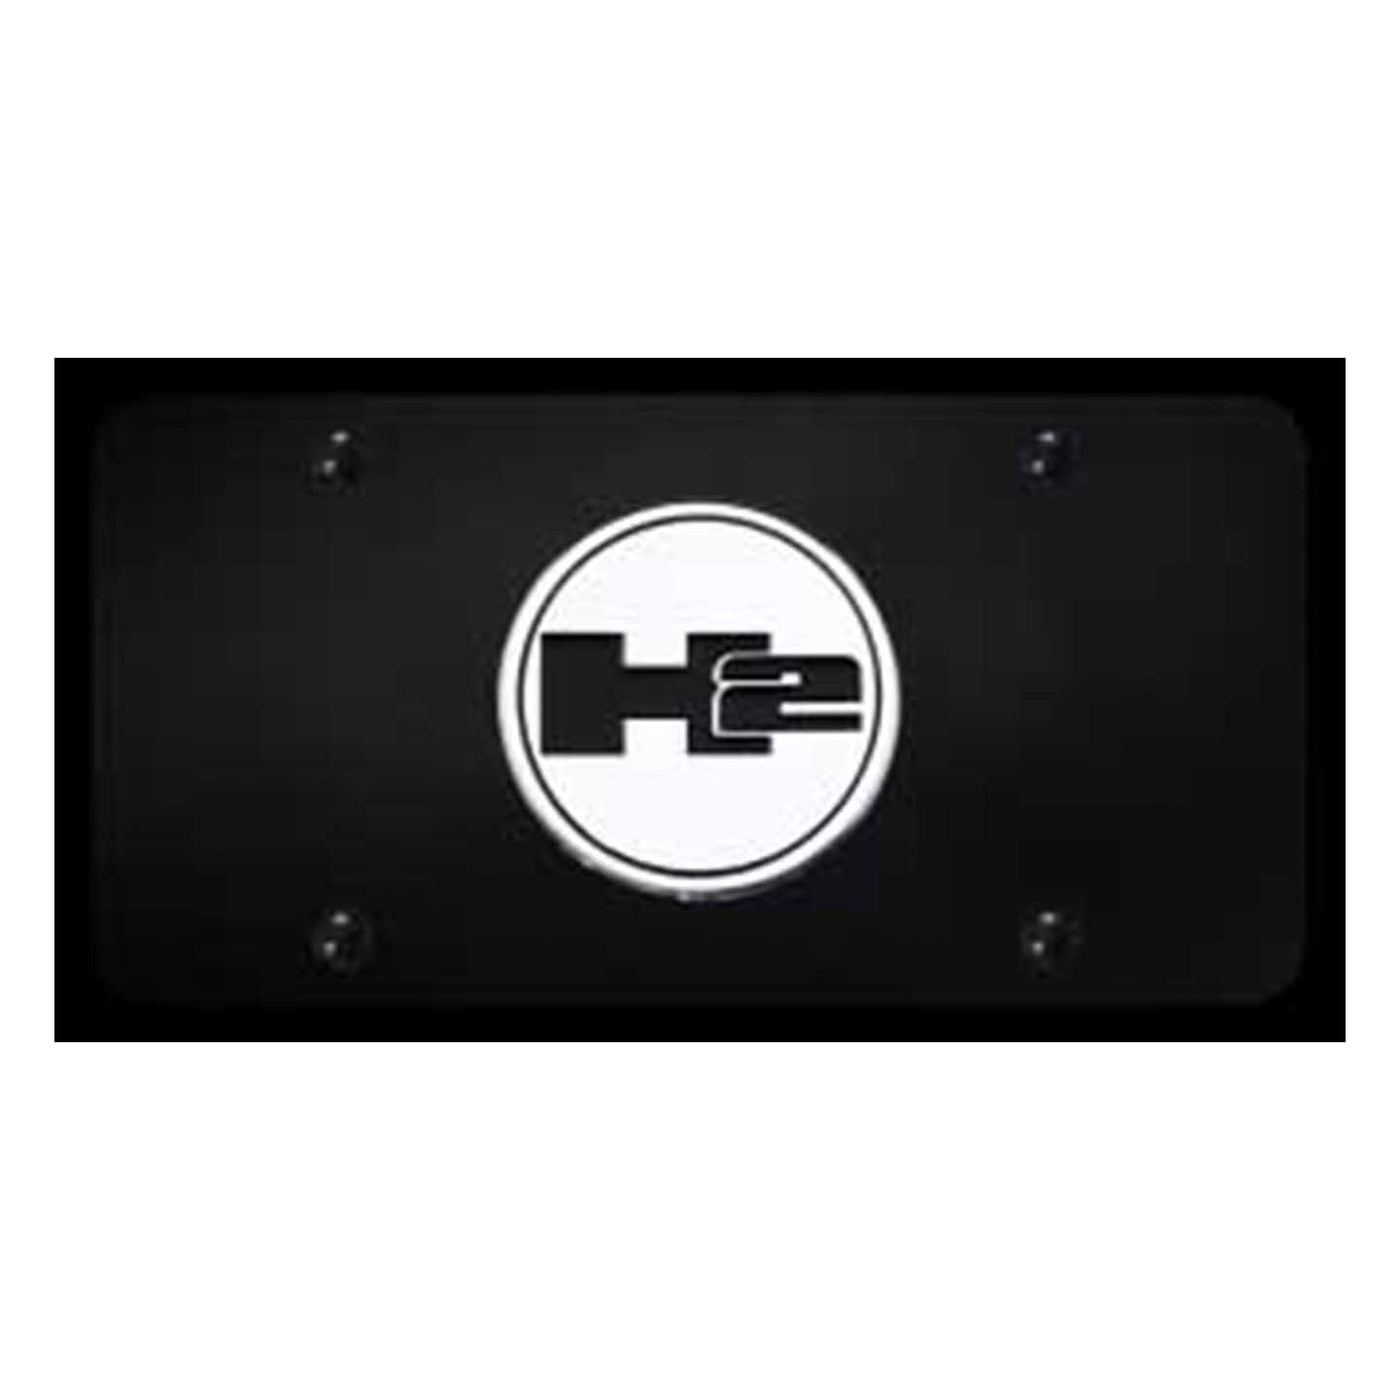 Hummer H2 License Plate - Chrome on Black